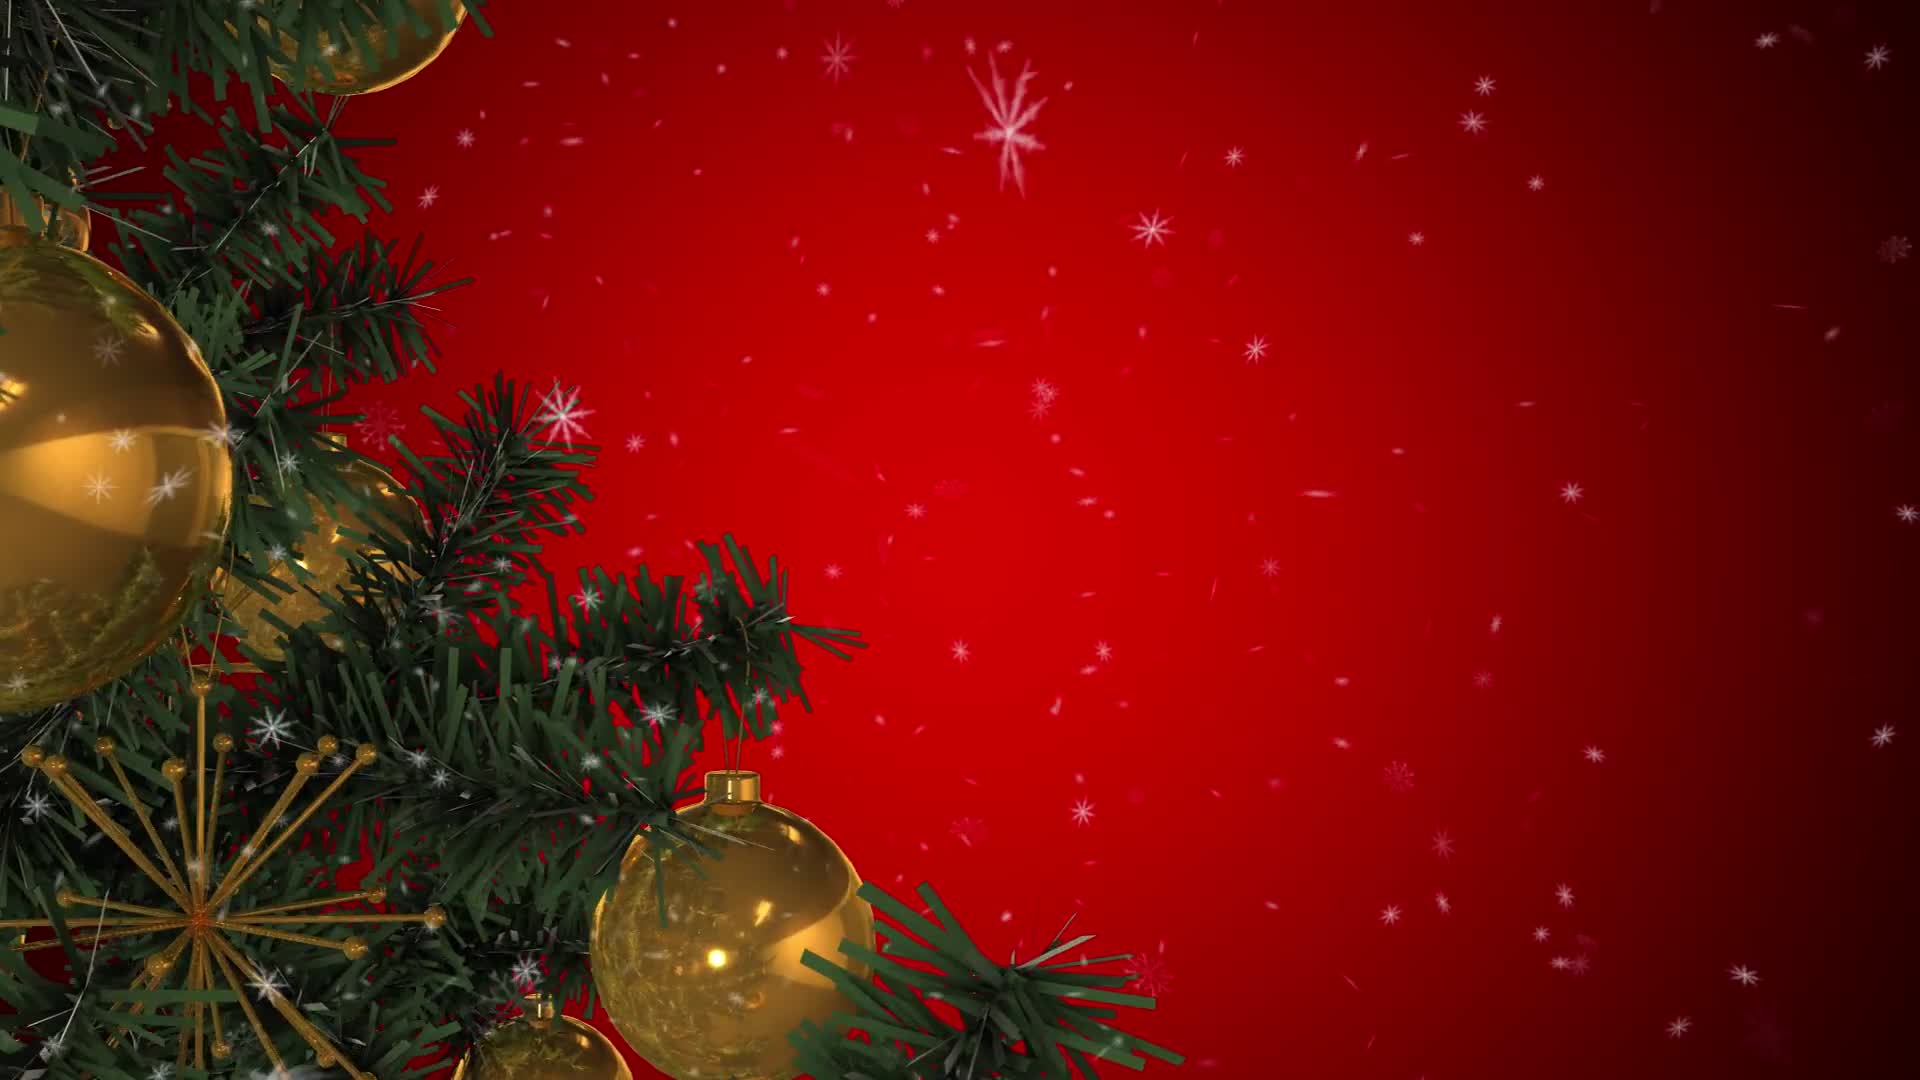 Rotating Christmas Tree Videohive 22935986 Motion Graphics Image 7